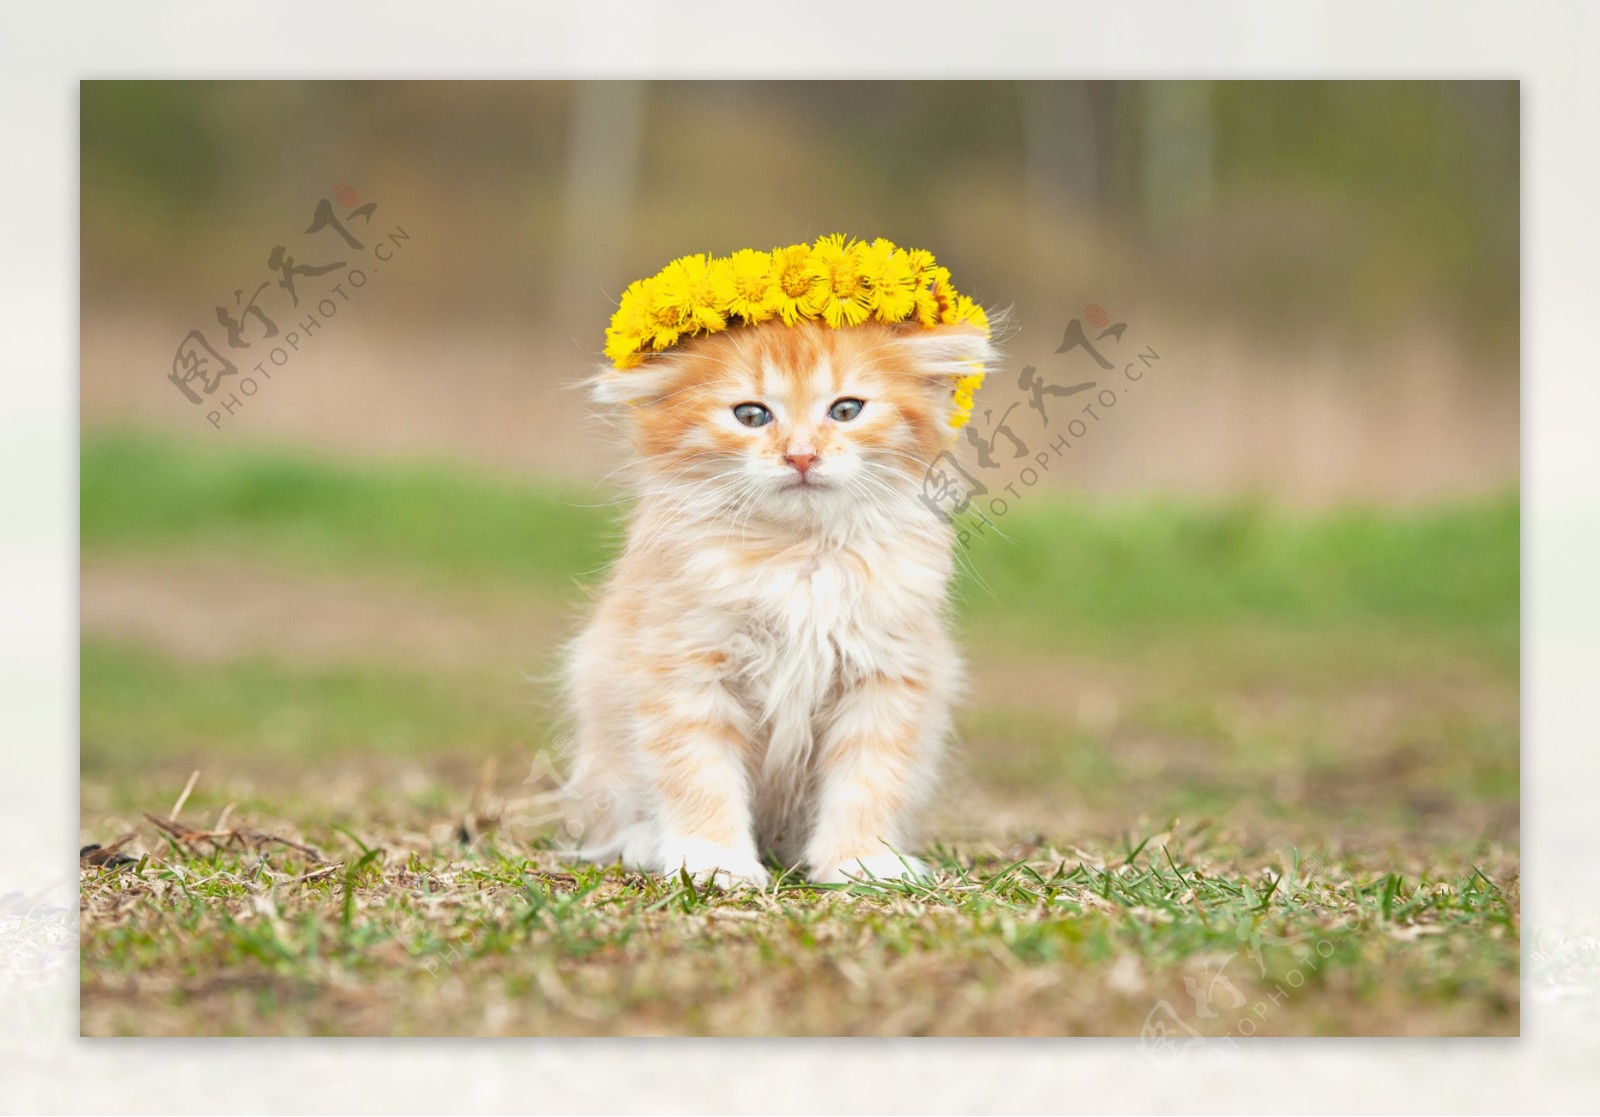 戴黄色花环的小猫图片